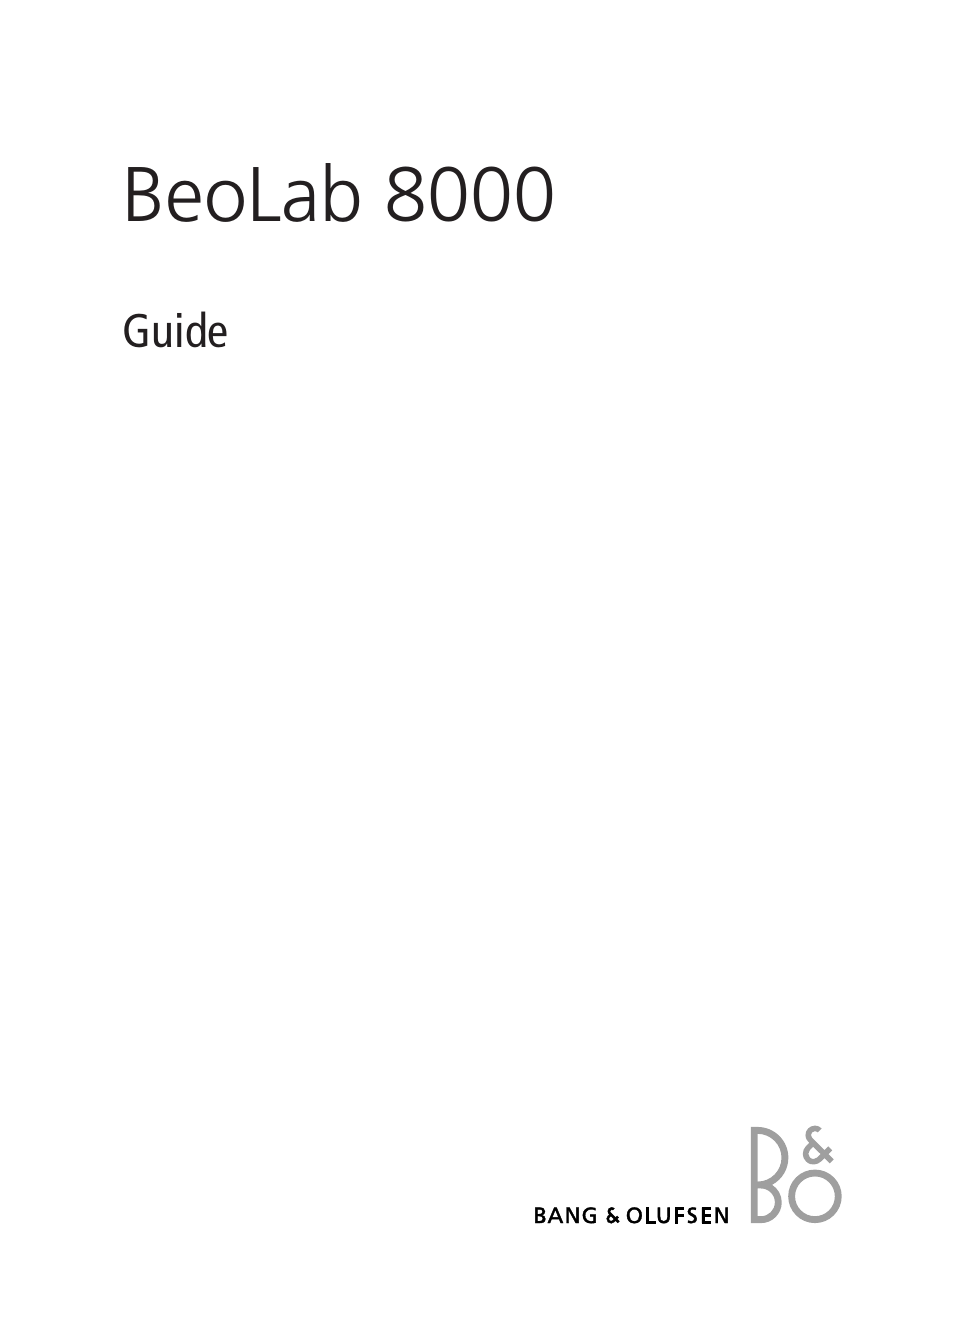 Инструкция по эксплуатации Bang & Olufsen BeoLab 8000 - User Guide | 8 страниц